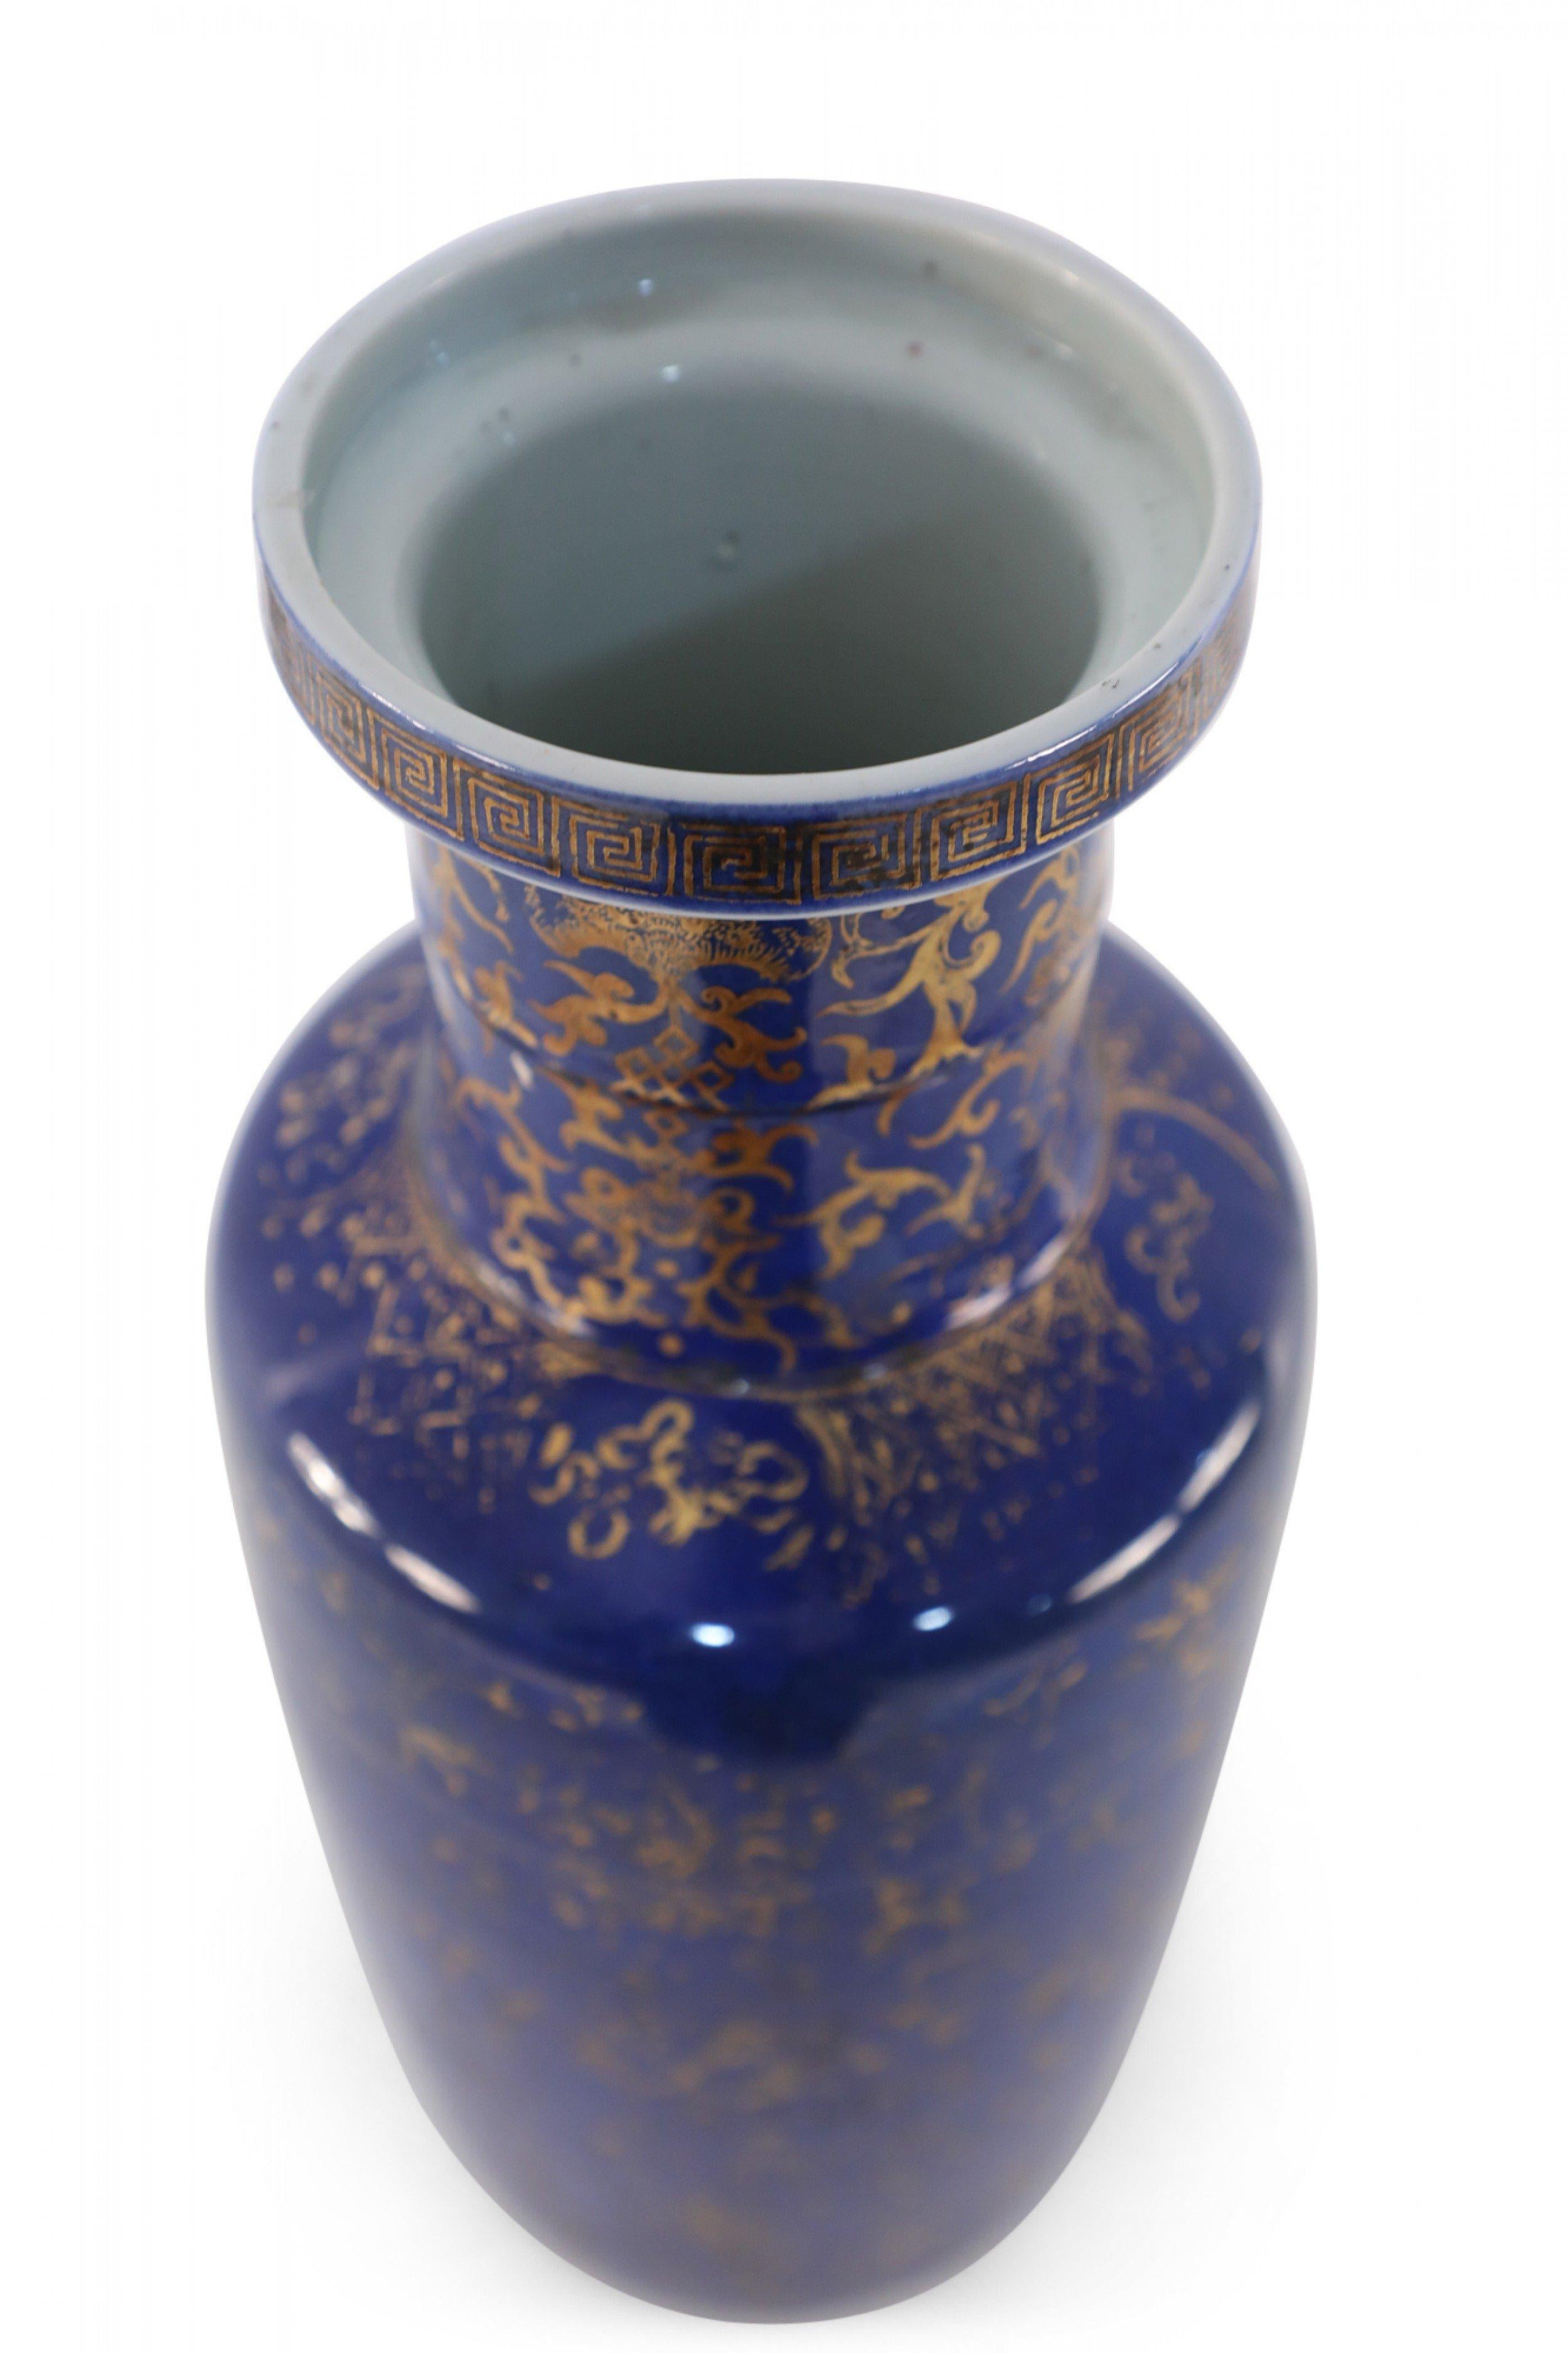 Ancien vase chinois (début du 20e siècle) en porcelaine bleu cobalt décoré d'une variété de motifs dorés comprenant des koï, des vignes, des plantes, et un bandeau en forme de clé grecque autour du col.
 